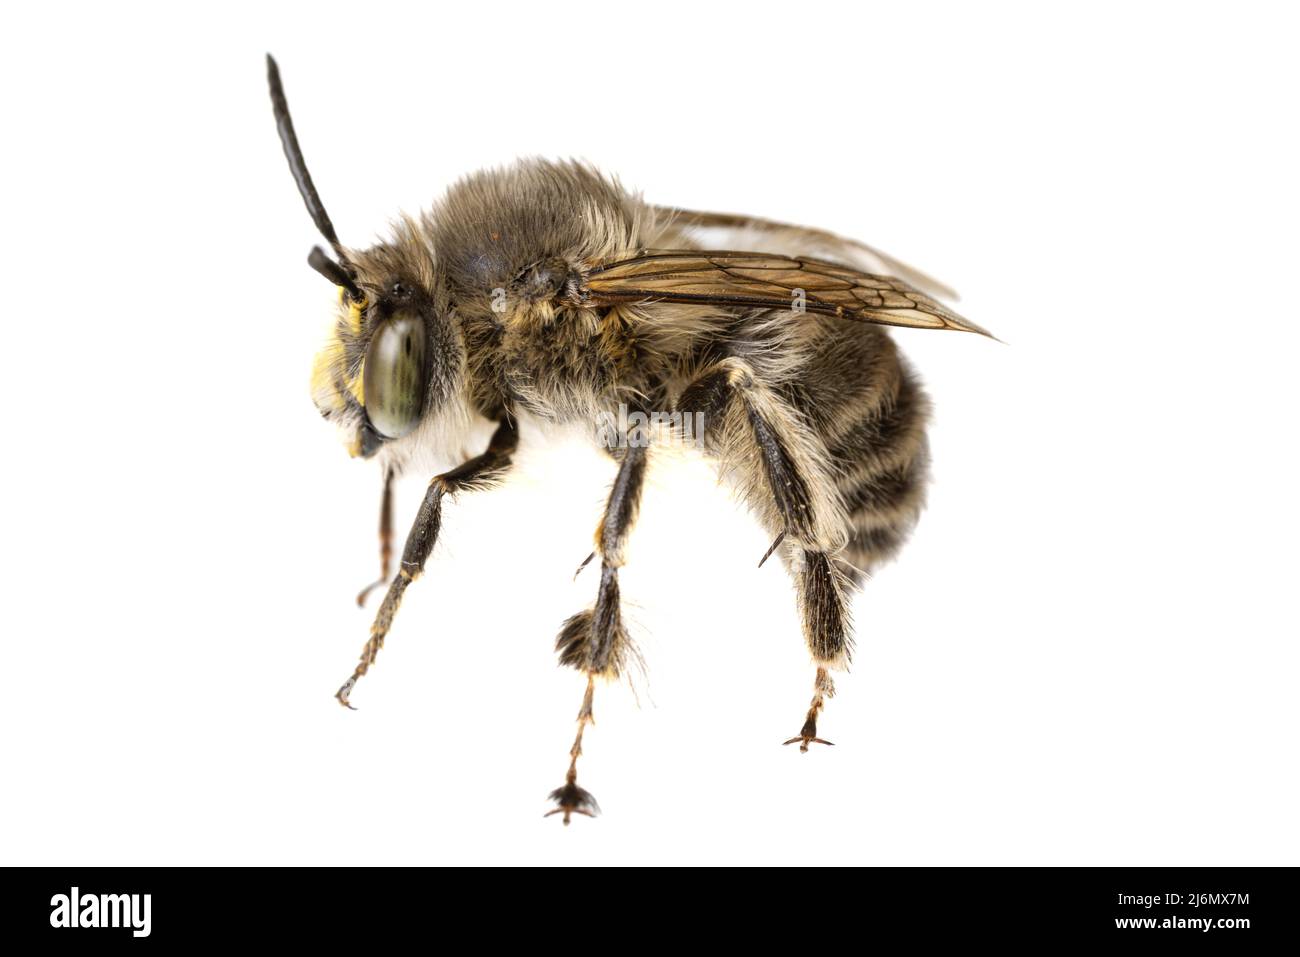 Insectes d'europe - abeilles: Macro d'Anthophora crinipes mâles (Pelzbienen) isolés sur fond blanc - vue latérale complète Banque D'Images